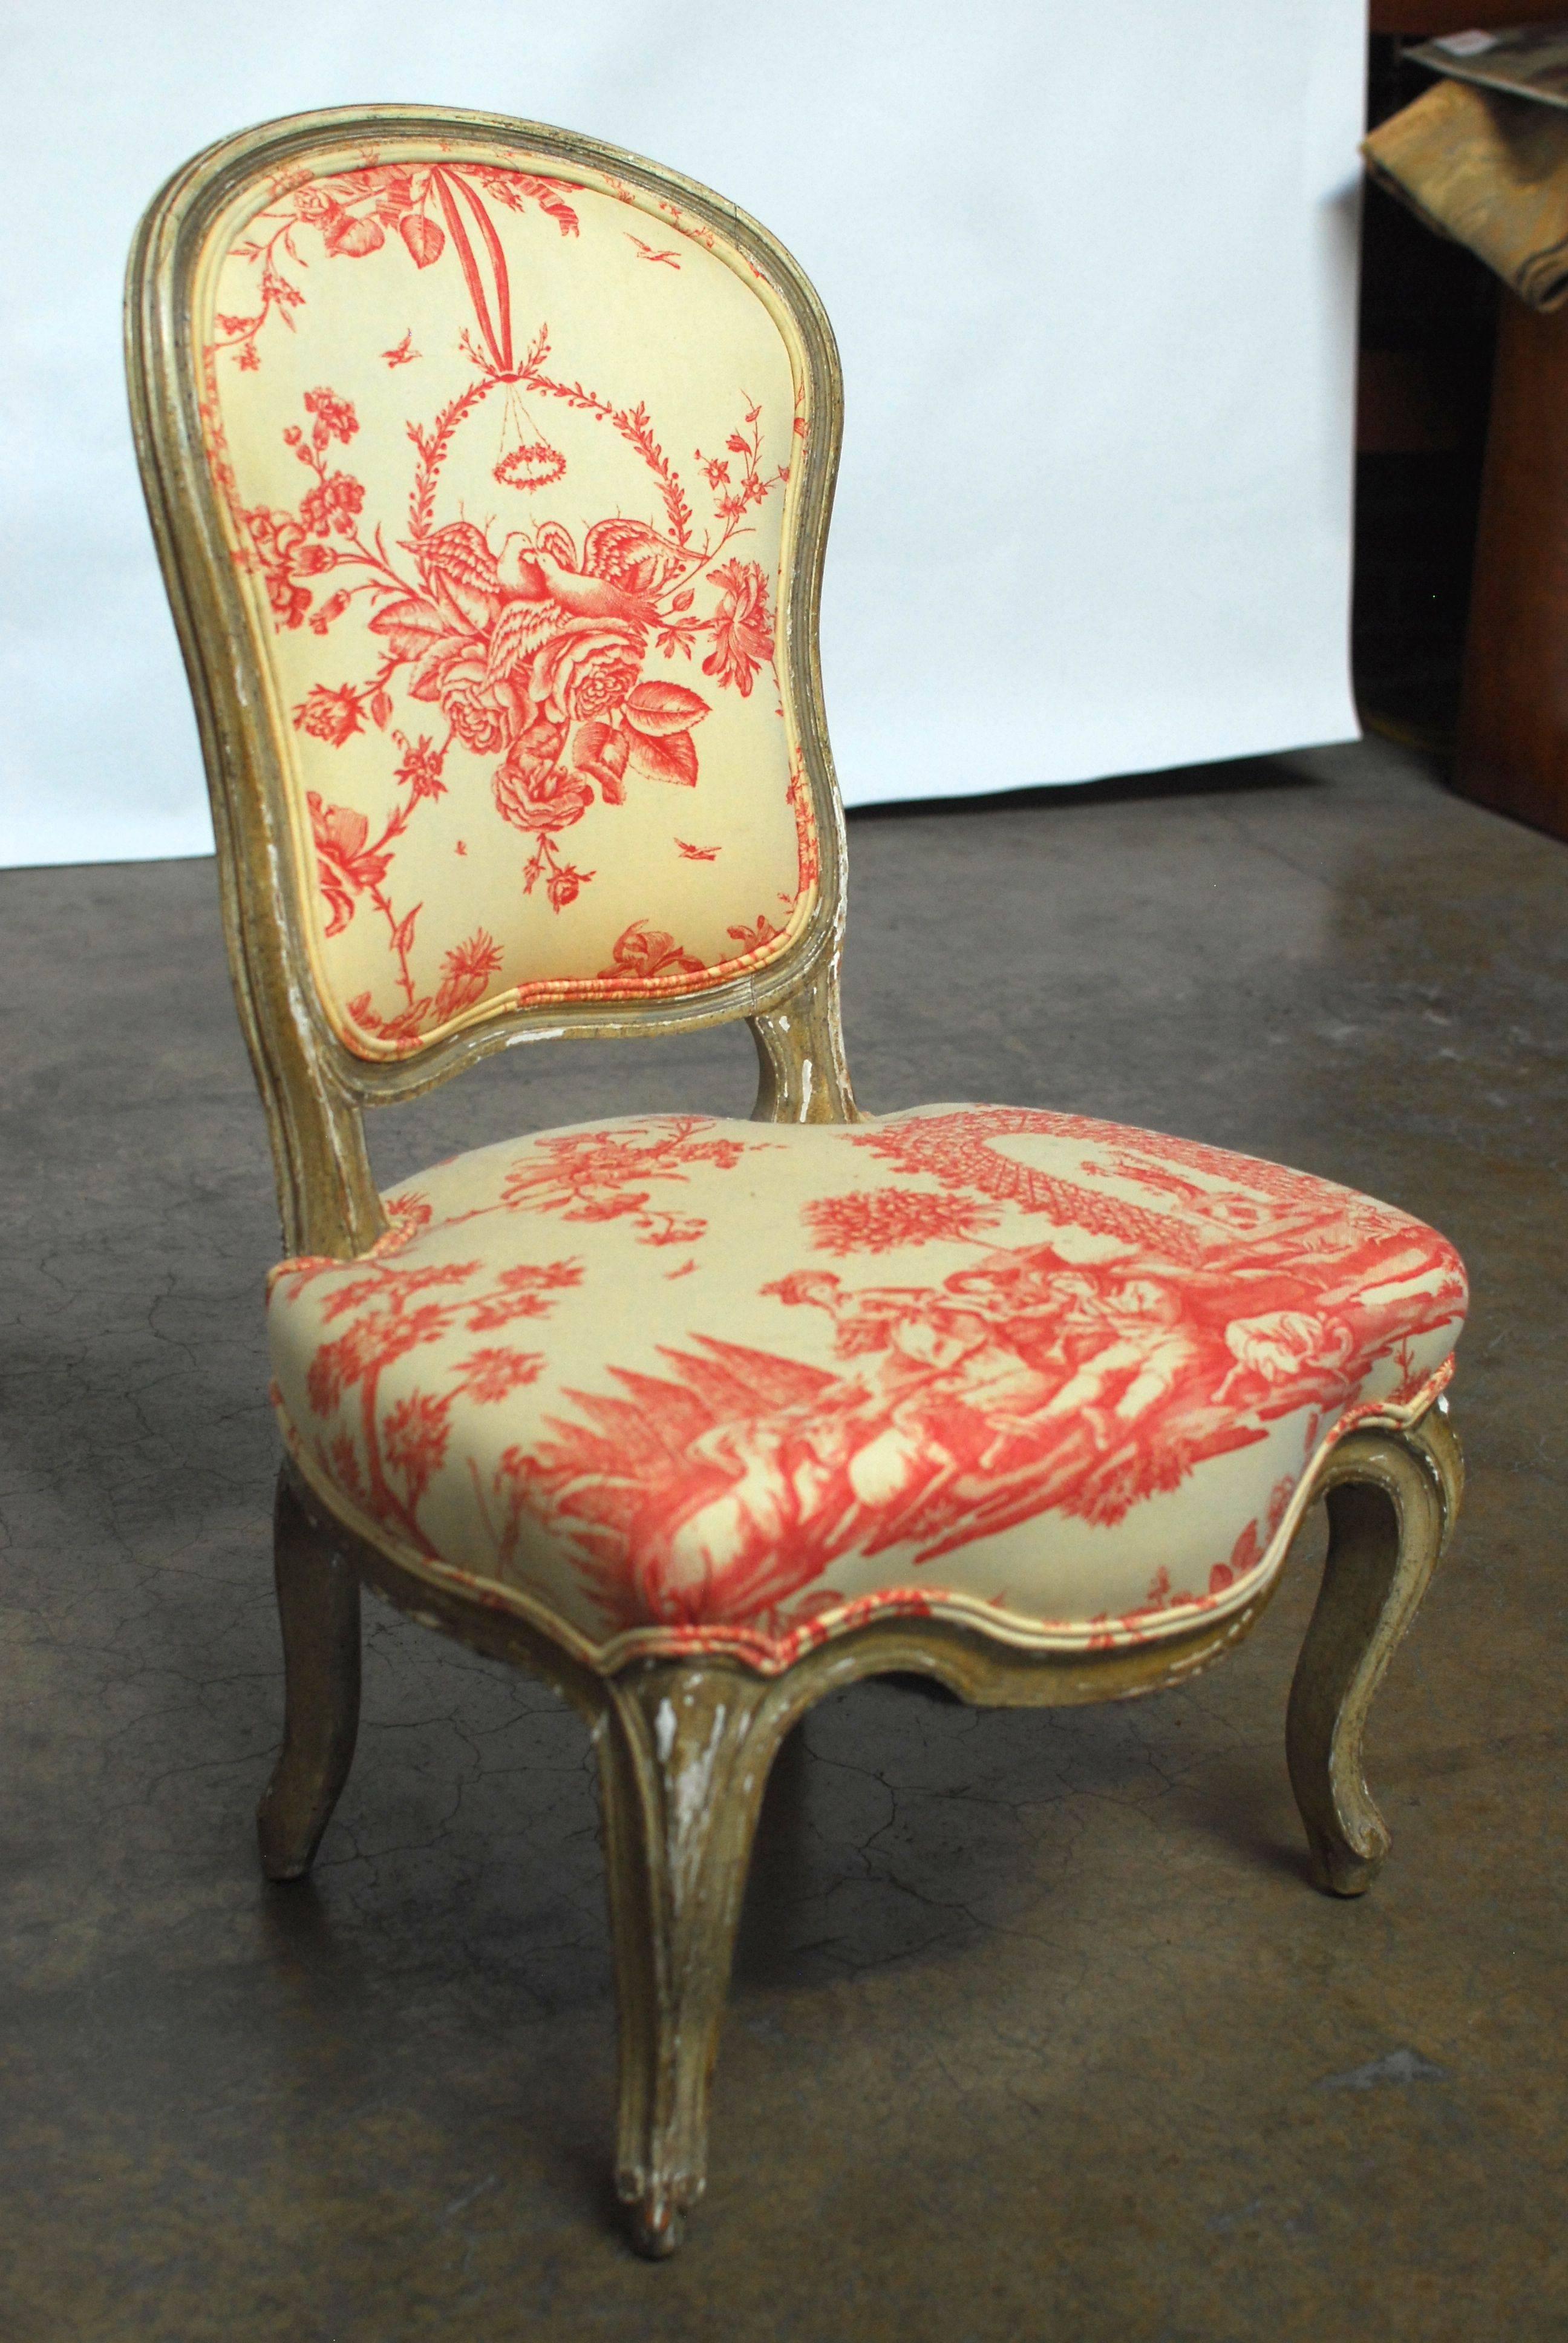 Französischer Pantoffel- oder Boudoir-Sessel im Louis XV-Stil mit geschnitztem Serpentinenrahmen und Cabriole-Beinen. Gepolstert mit einem rot- und cremefarbenen Toile-Stoff mit doppelter Kedereinfassung. Der Rahmen hat eine originale,